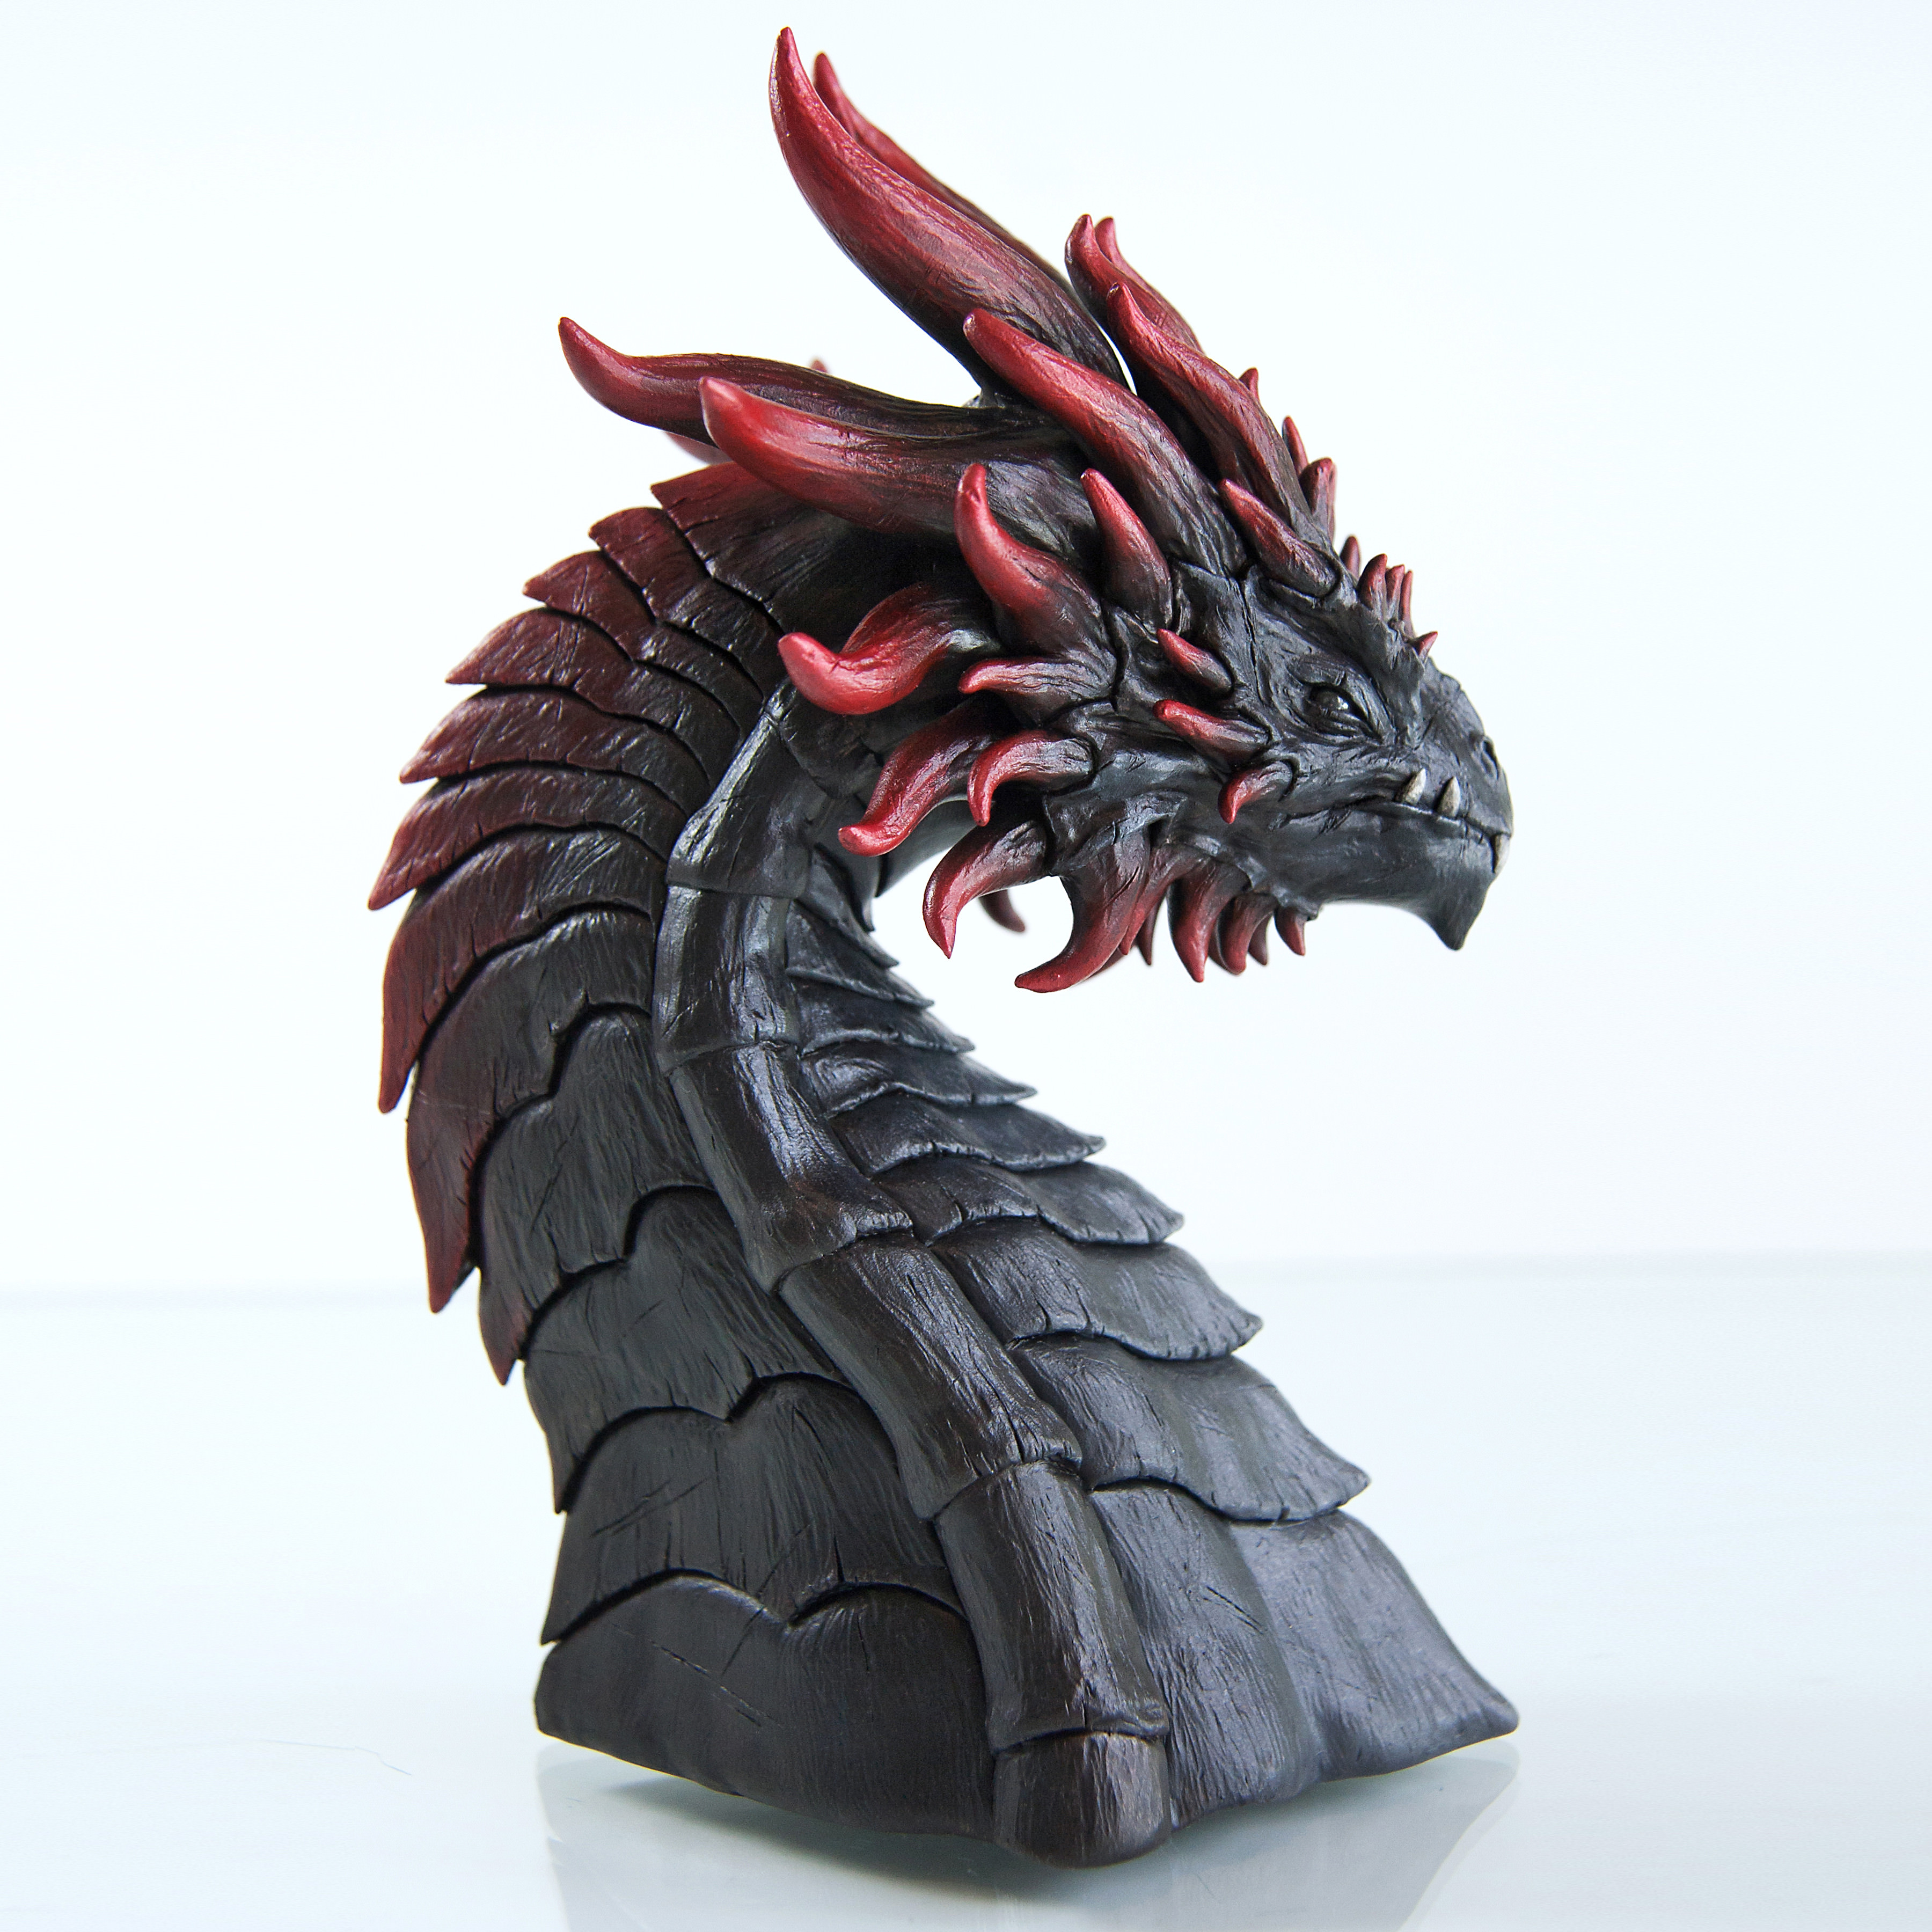 Dragon Sculpture - Album on Imgur